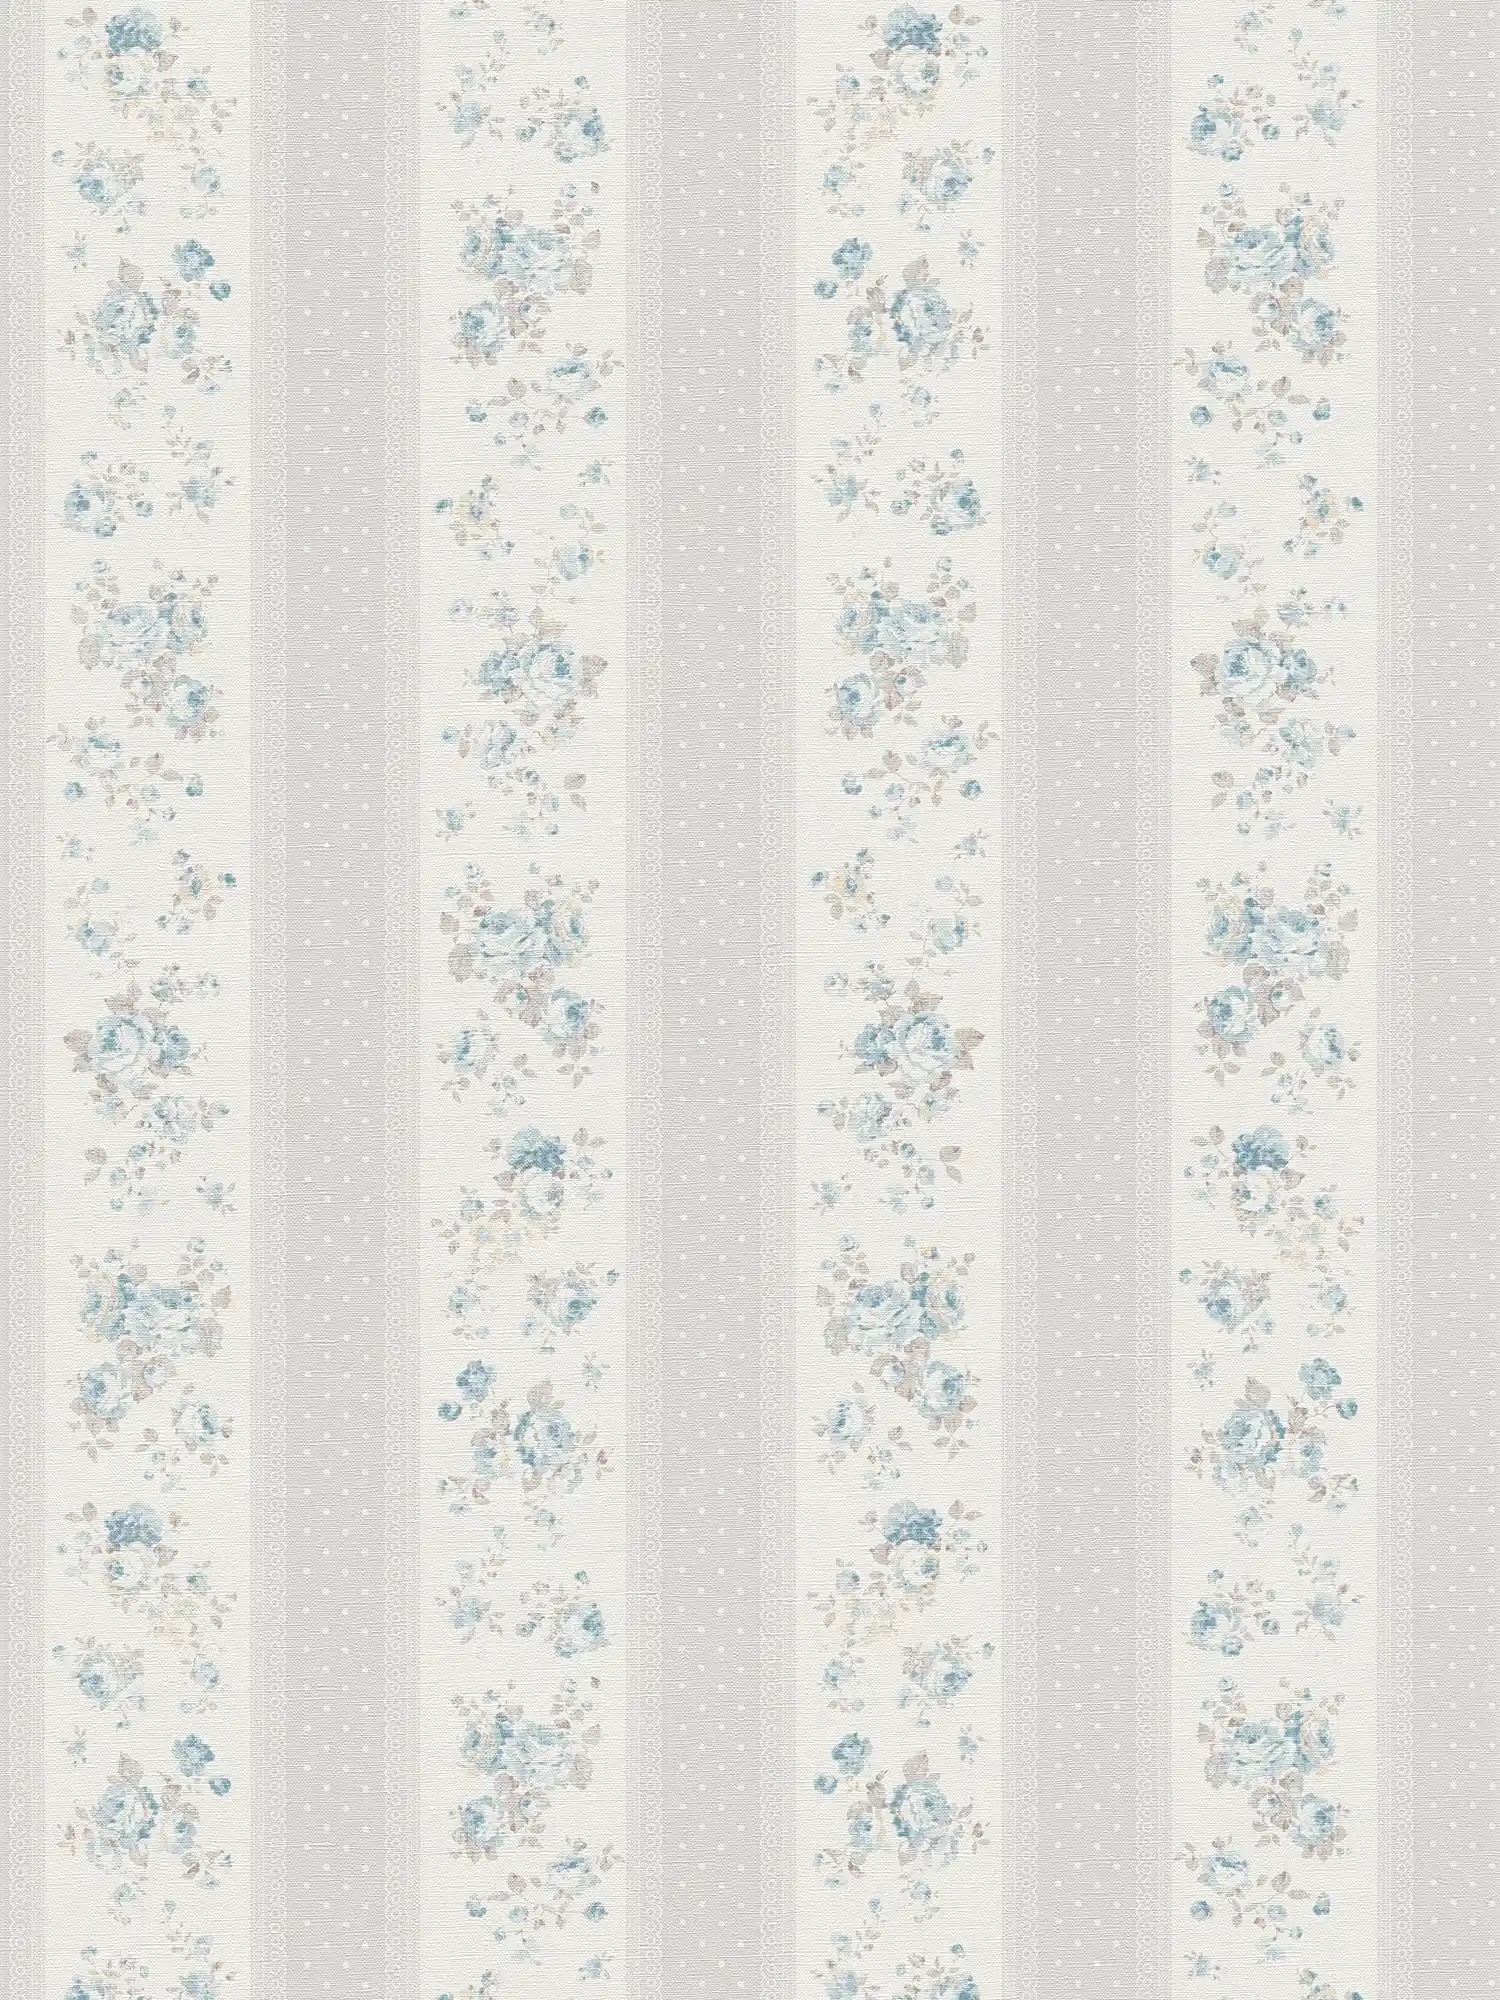         Papel pintado no tejido con rayas punteadas y florales - gris, blanco, azul
    